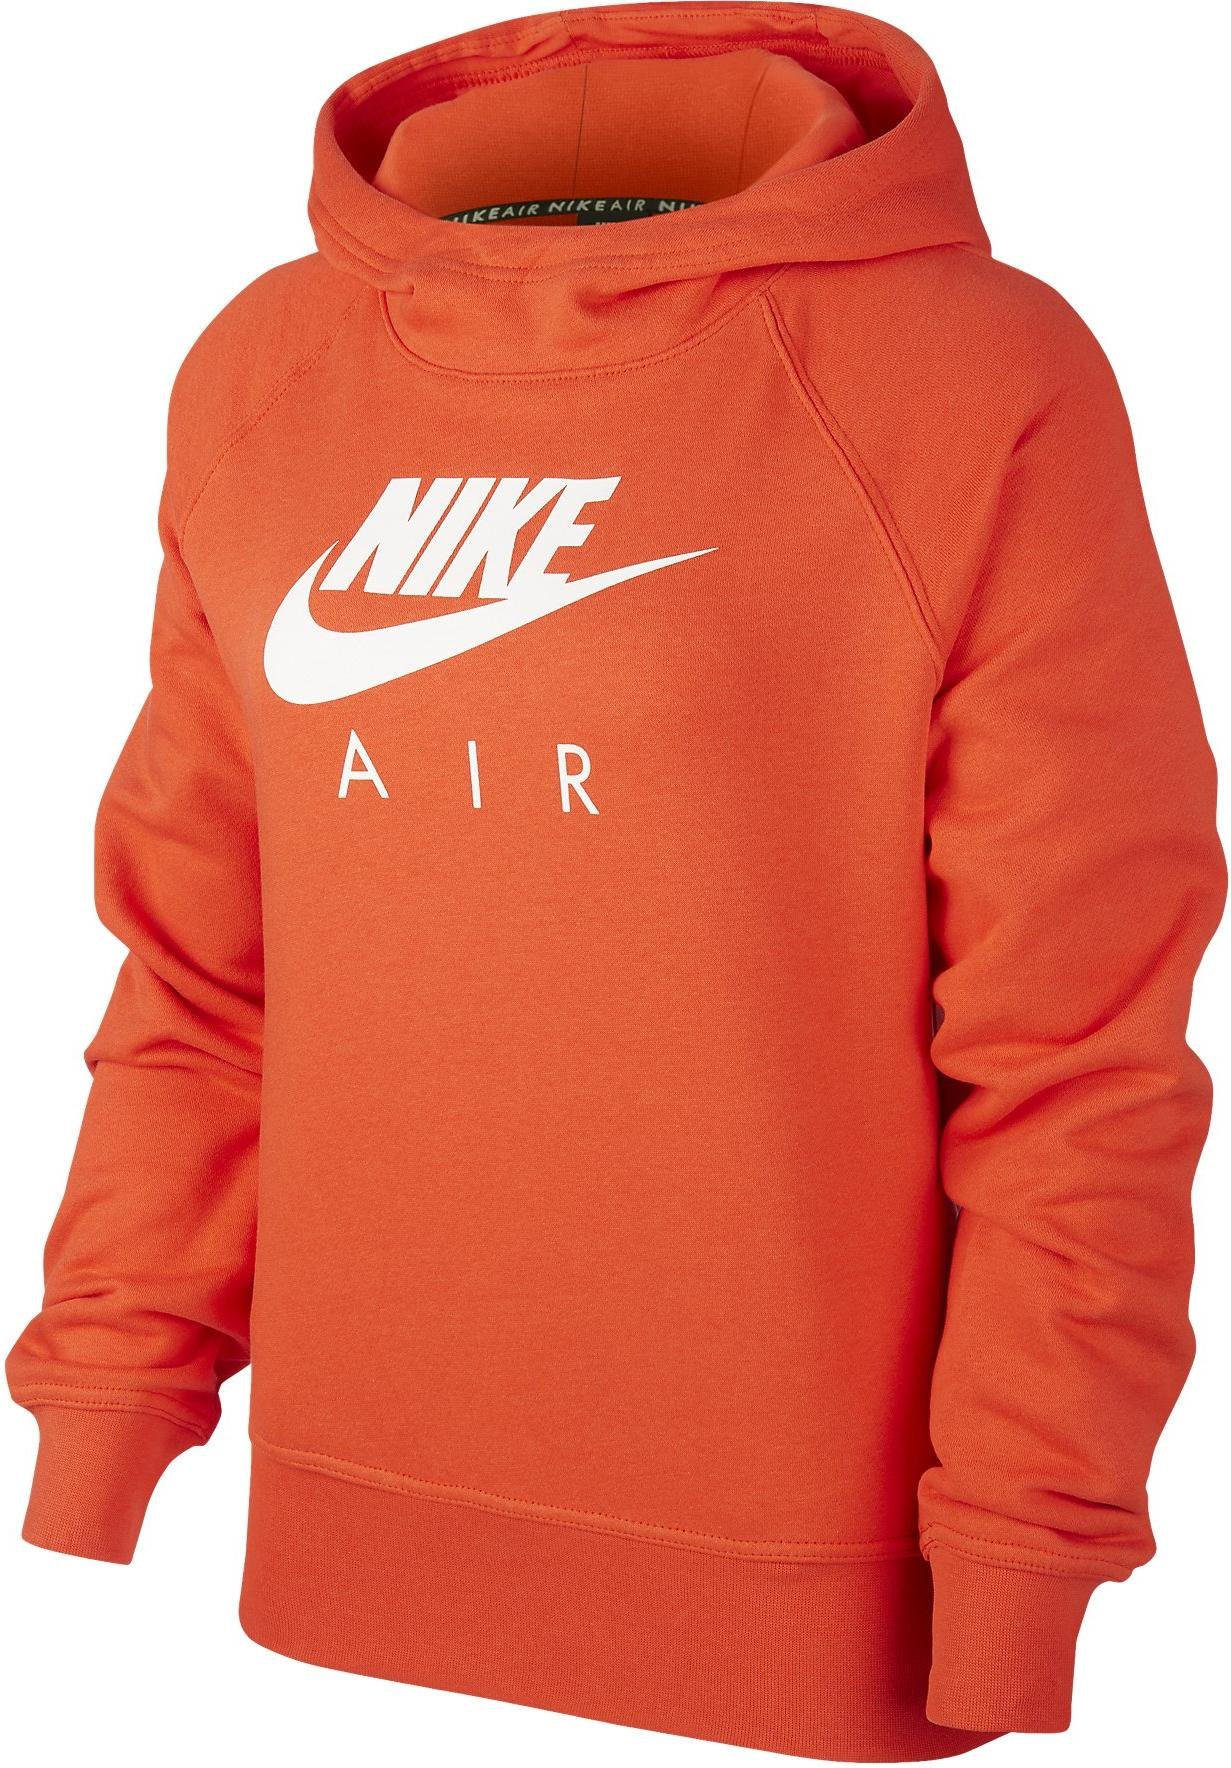 nike air hoodie orange